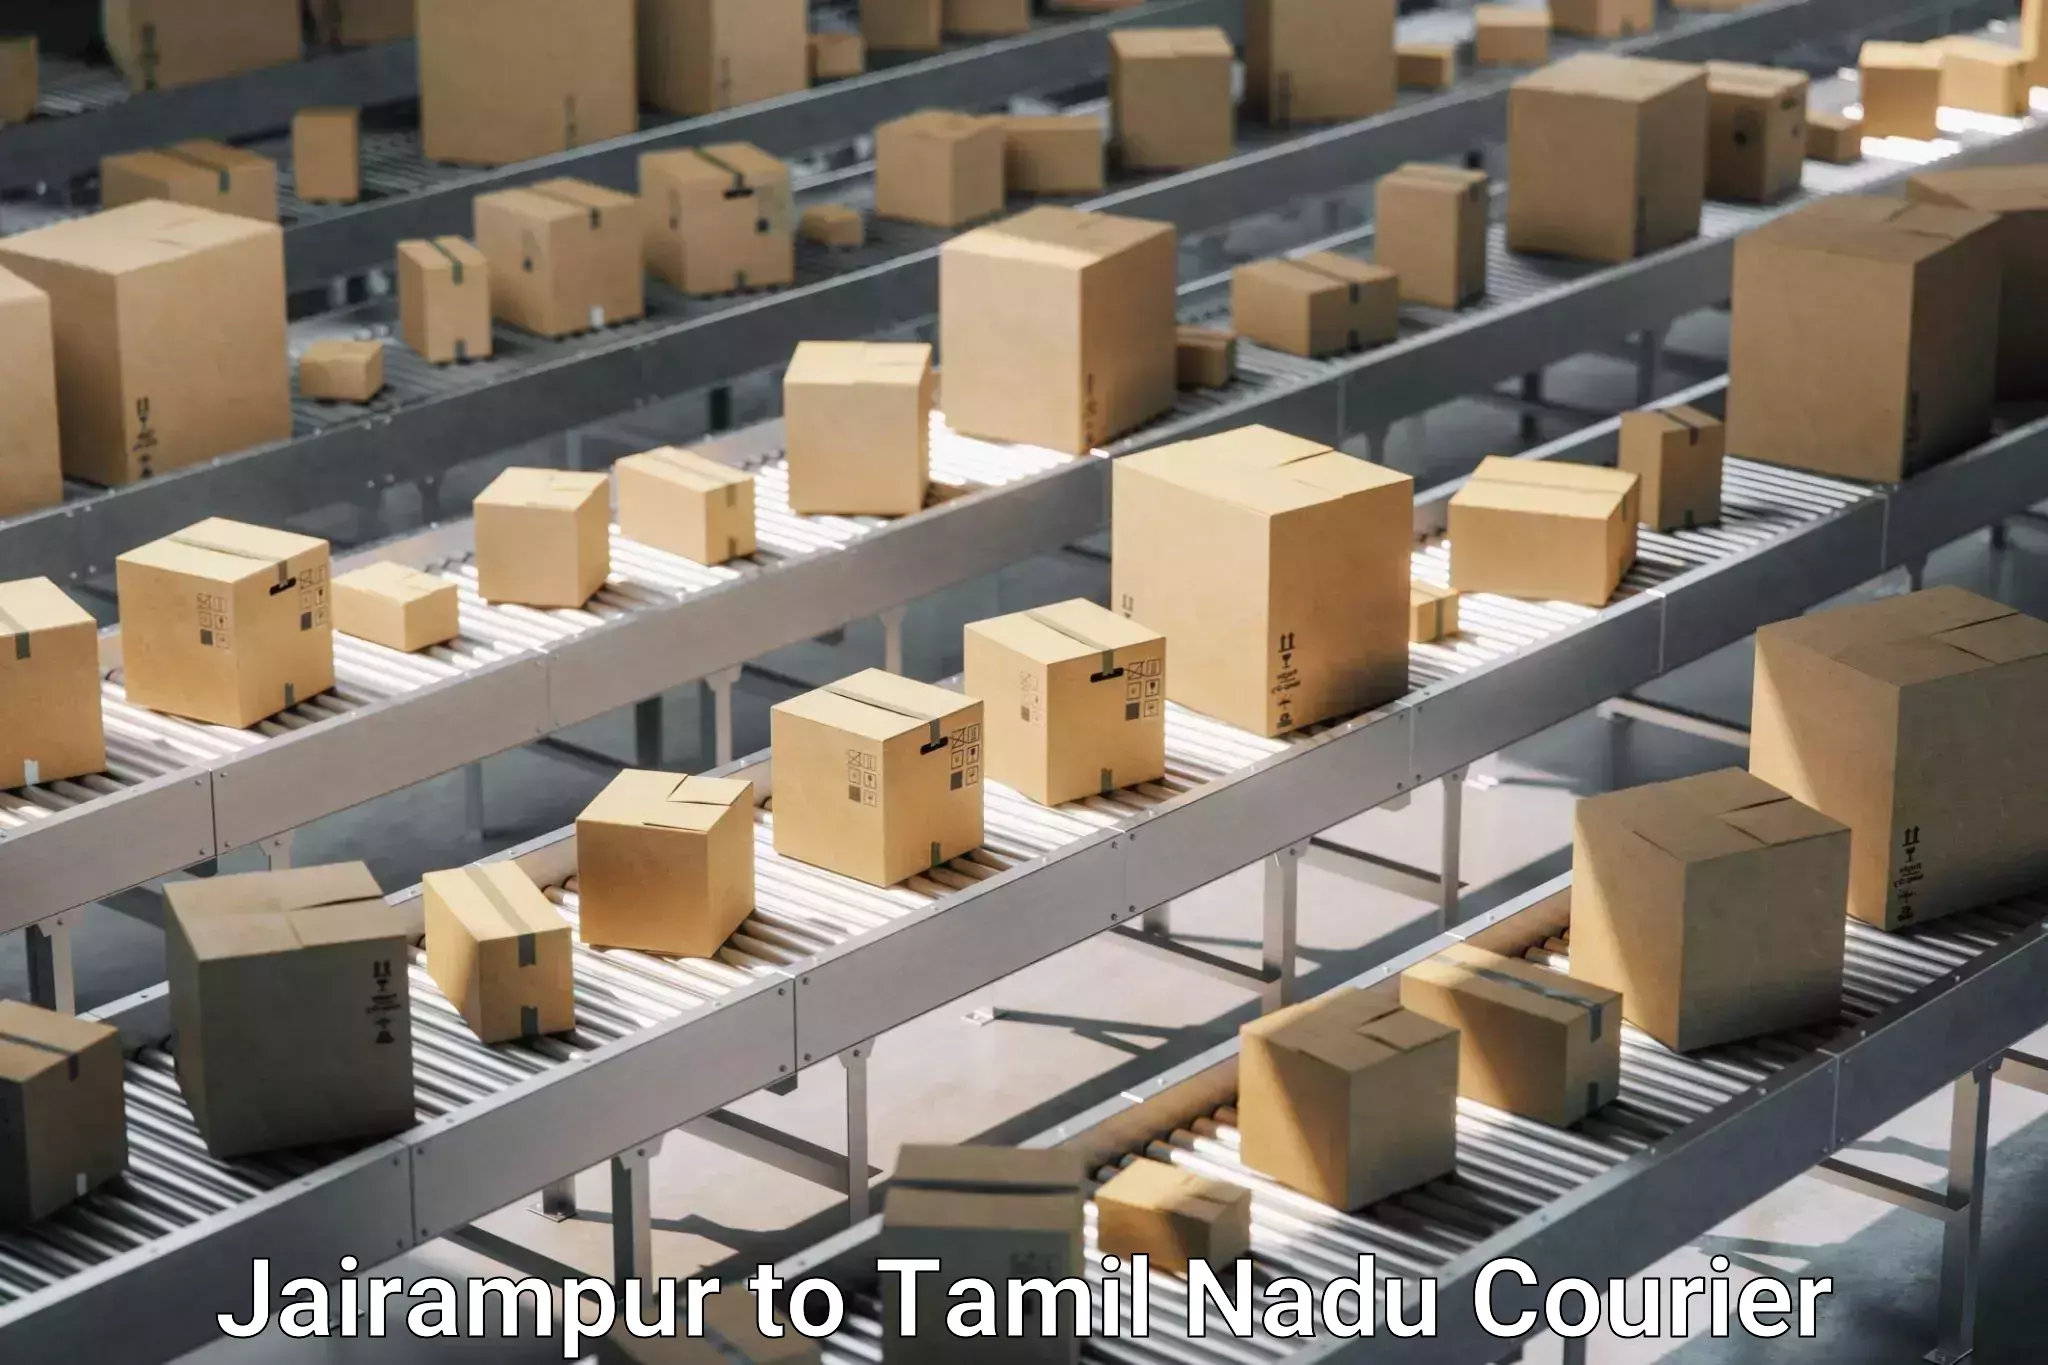 Trusted furniture movers Jairampur to Virudhunagar